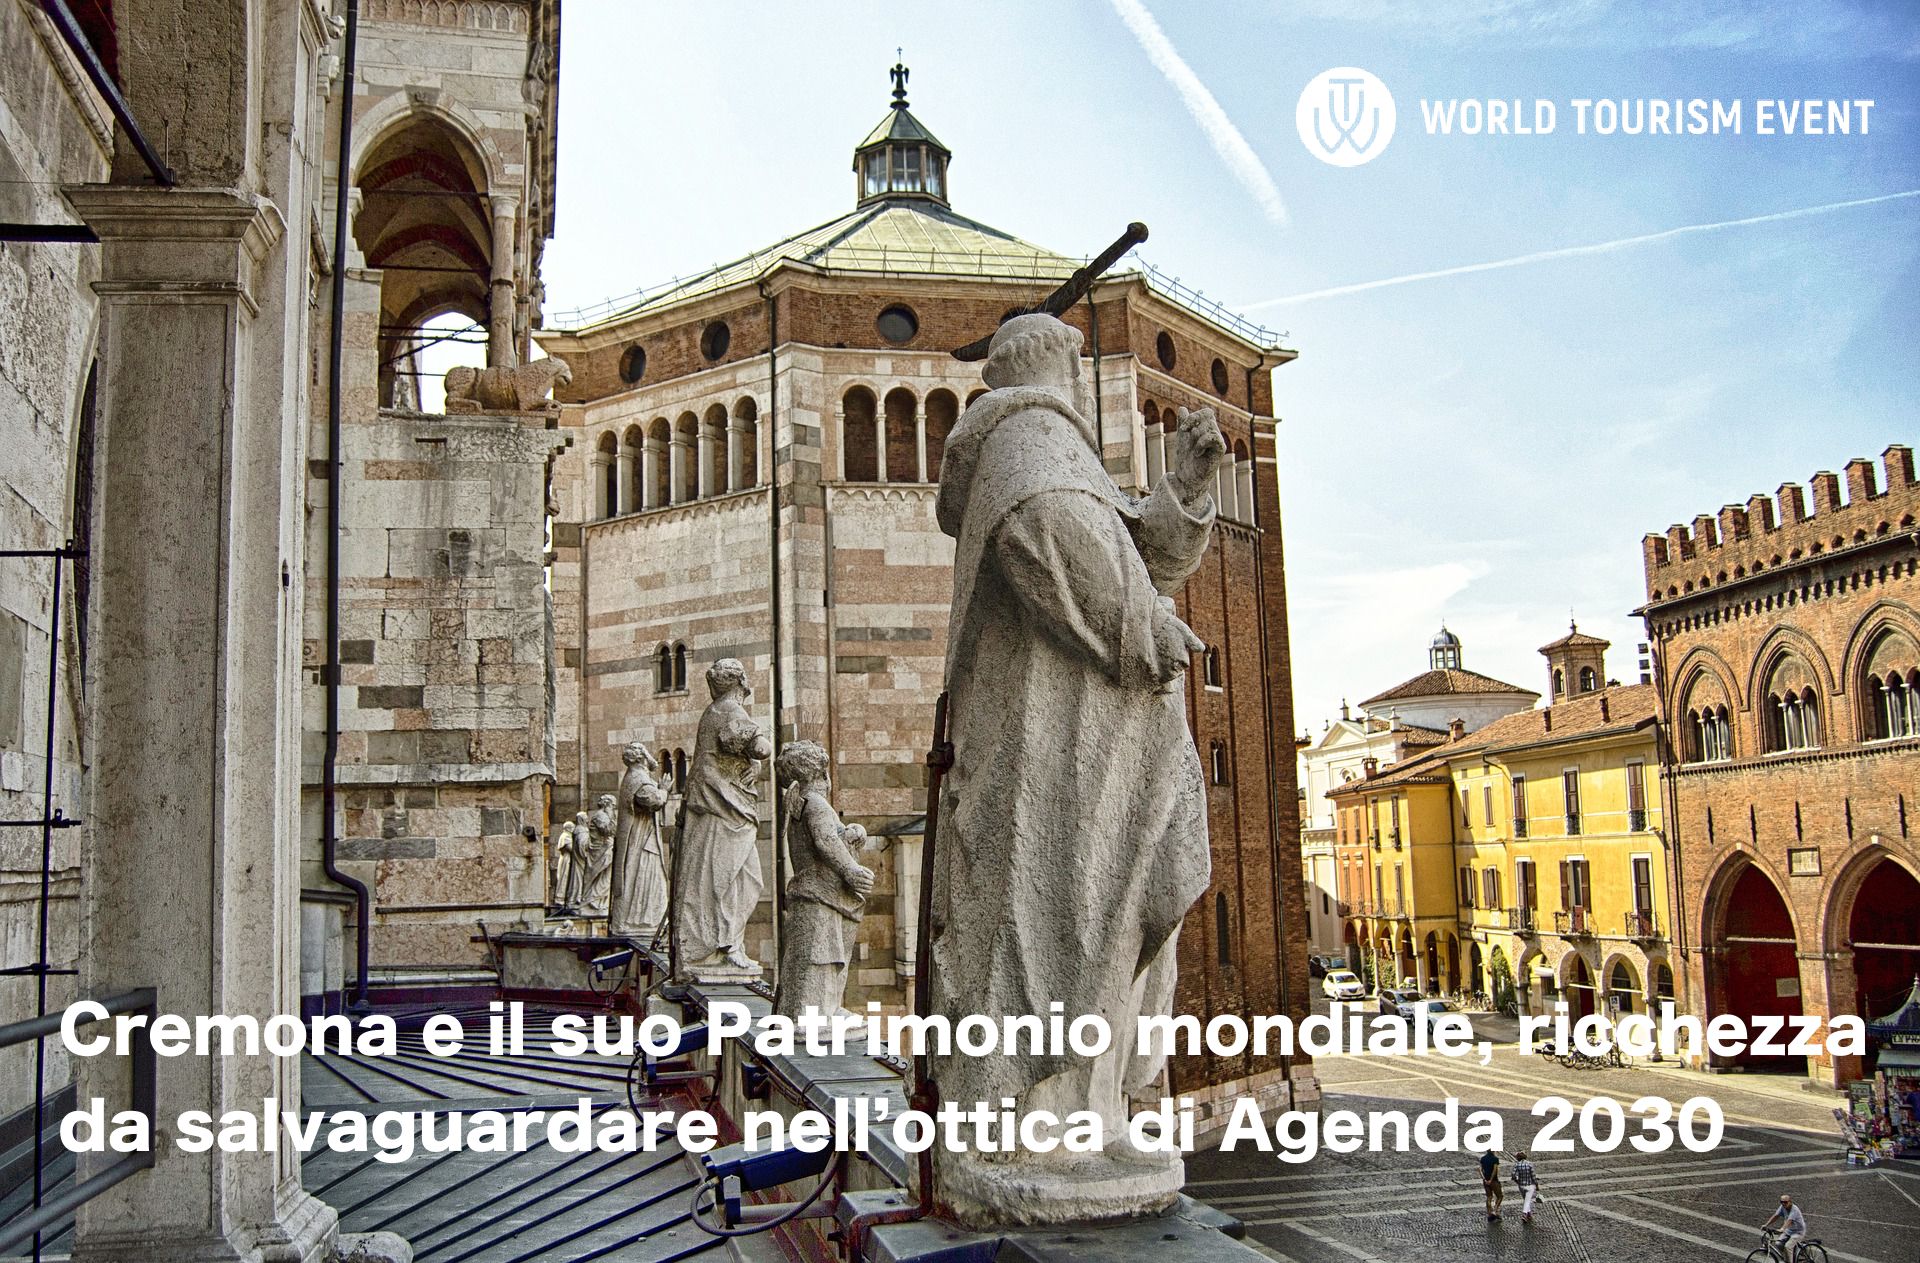 Cremona e il suo Patrimonio mondiale, ricchezza da salvaguardare nell’ottica di Agenda 2030